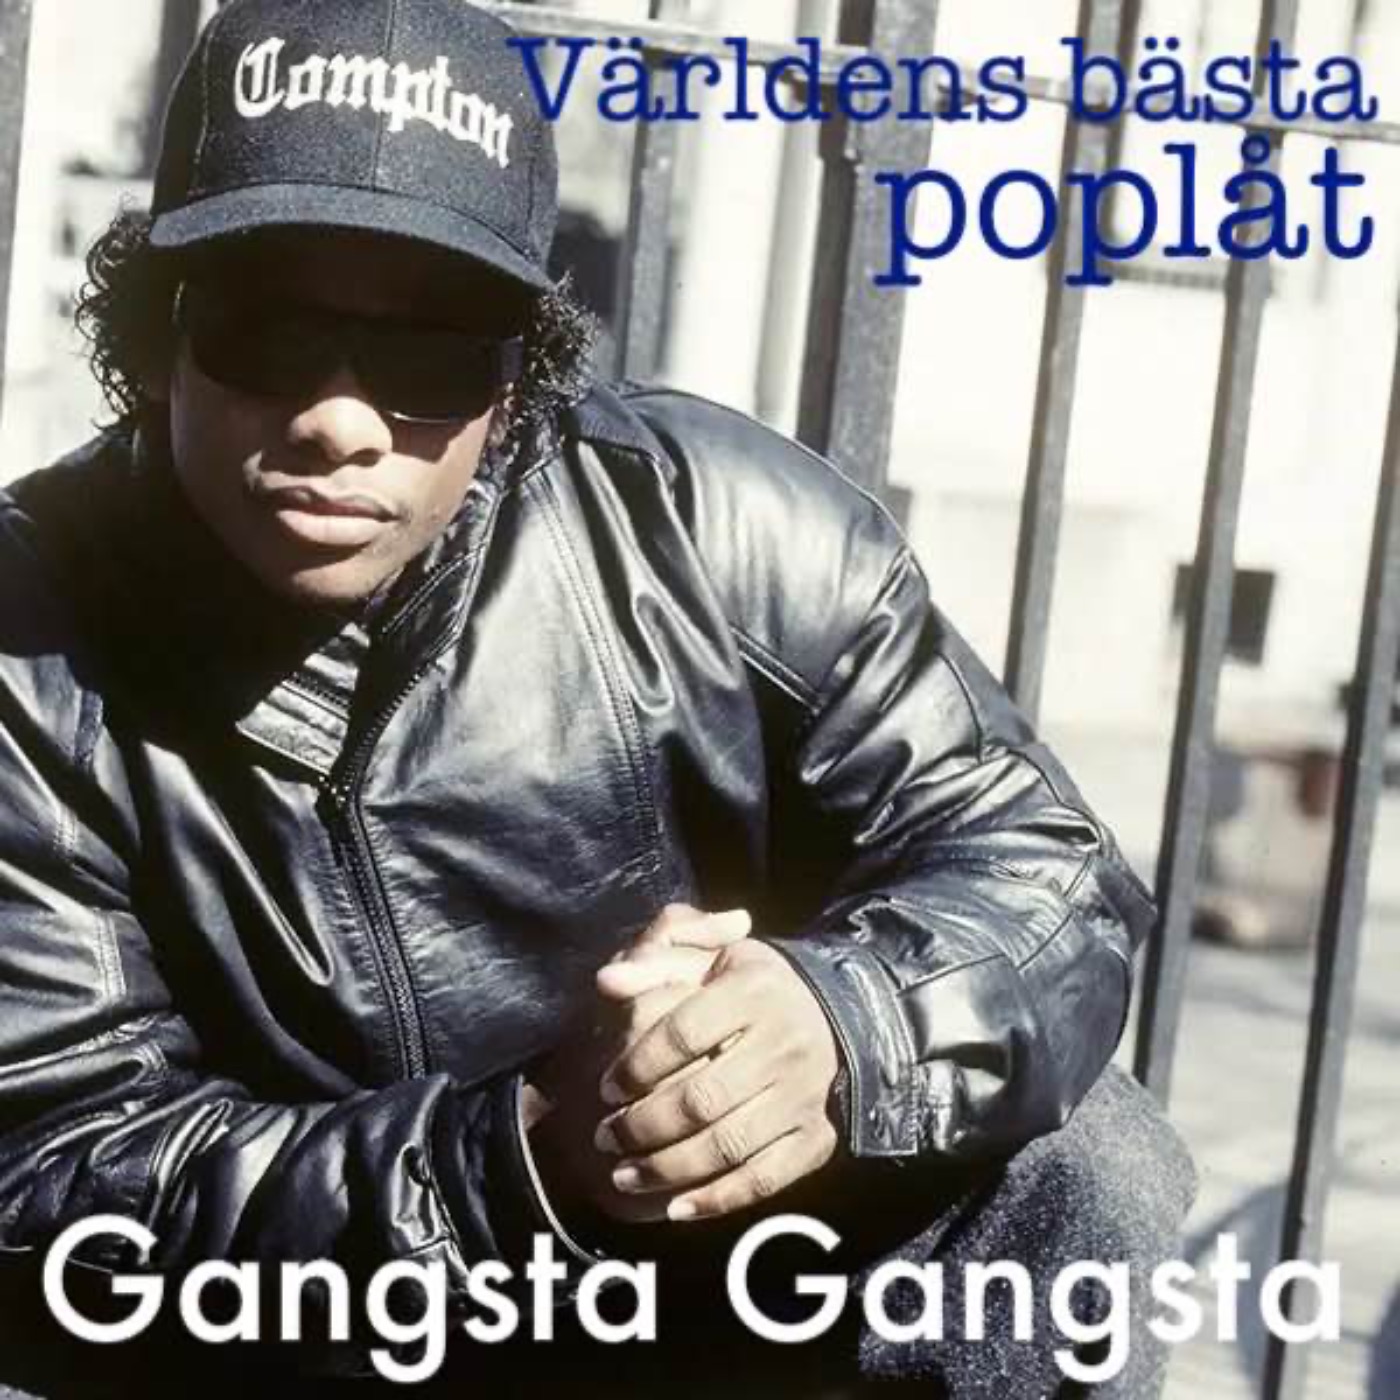 Gangsta Gangsta, ytterligare en låt som inte kan finnas